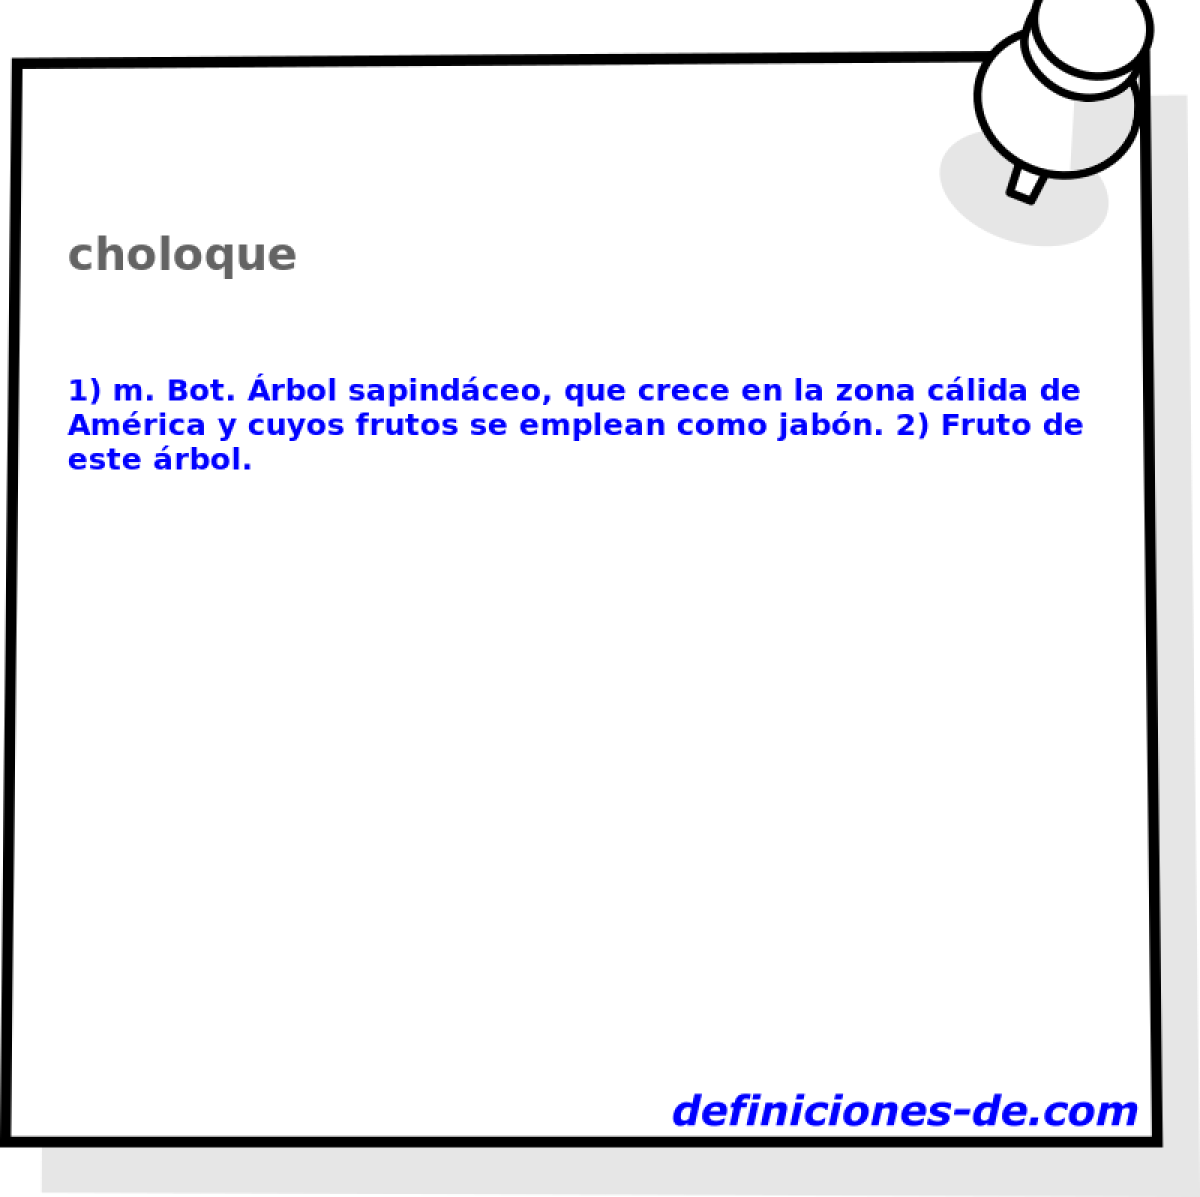 choloque 